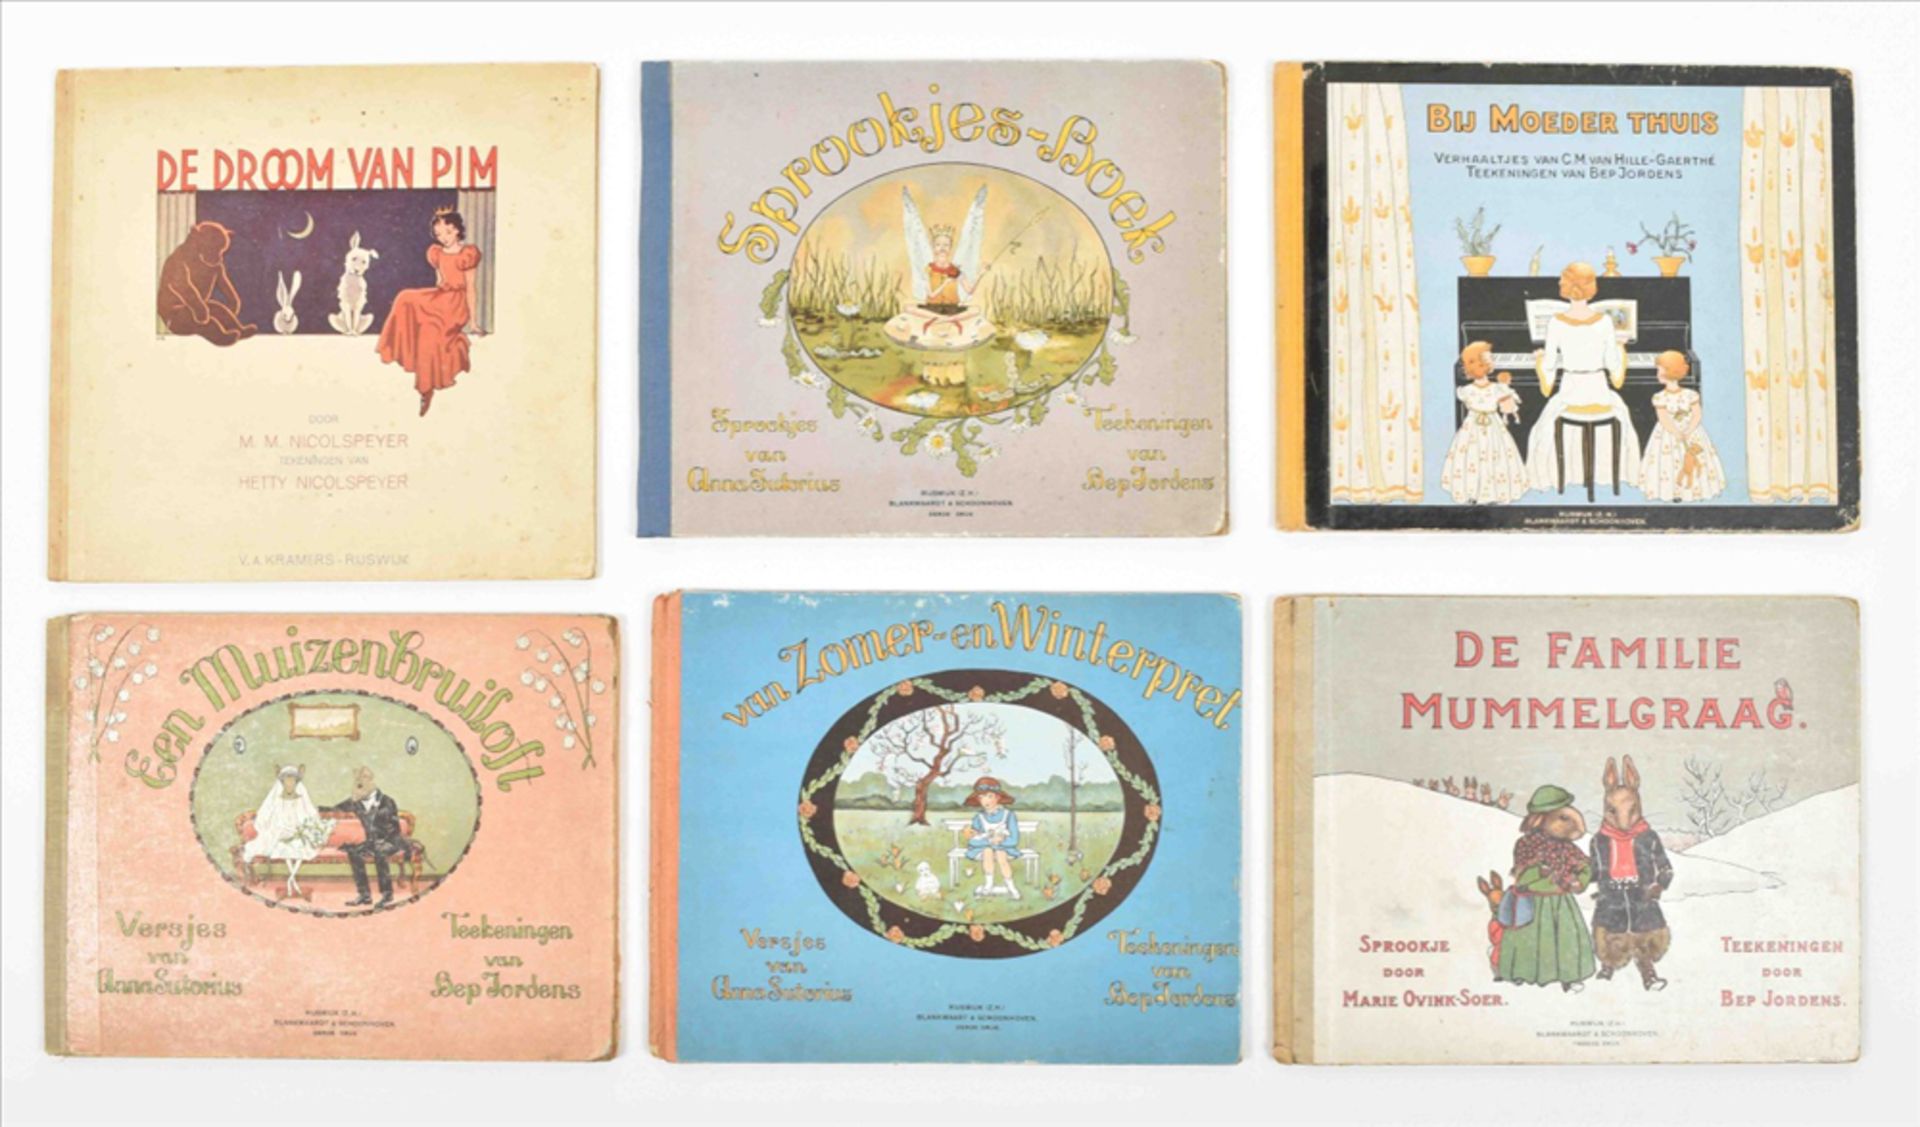 Seven children's books illustrated by Bep Jordens